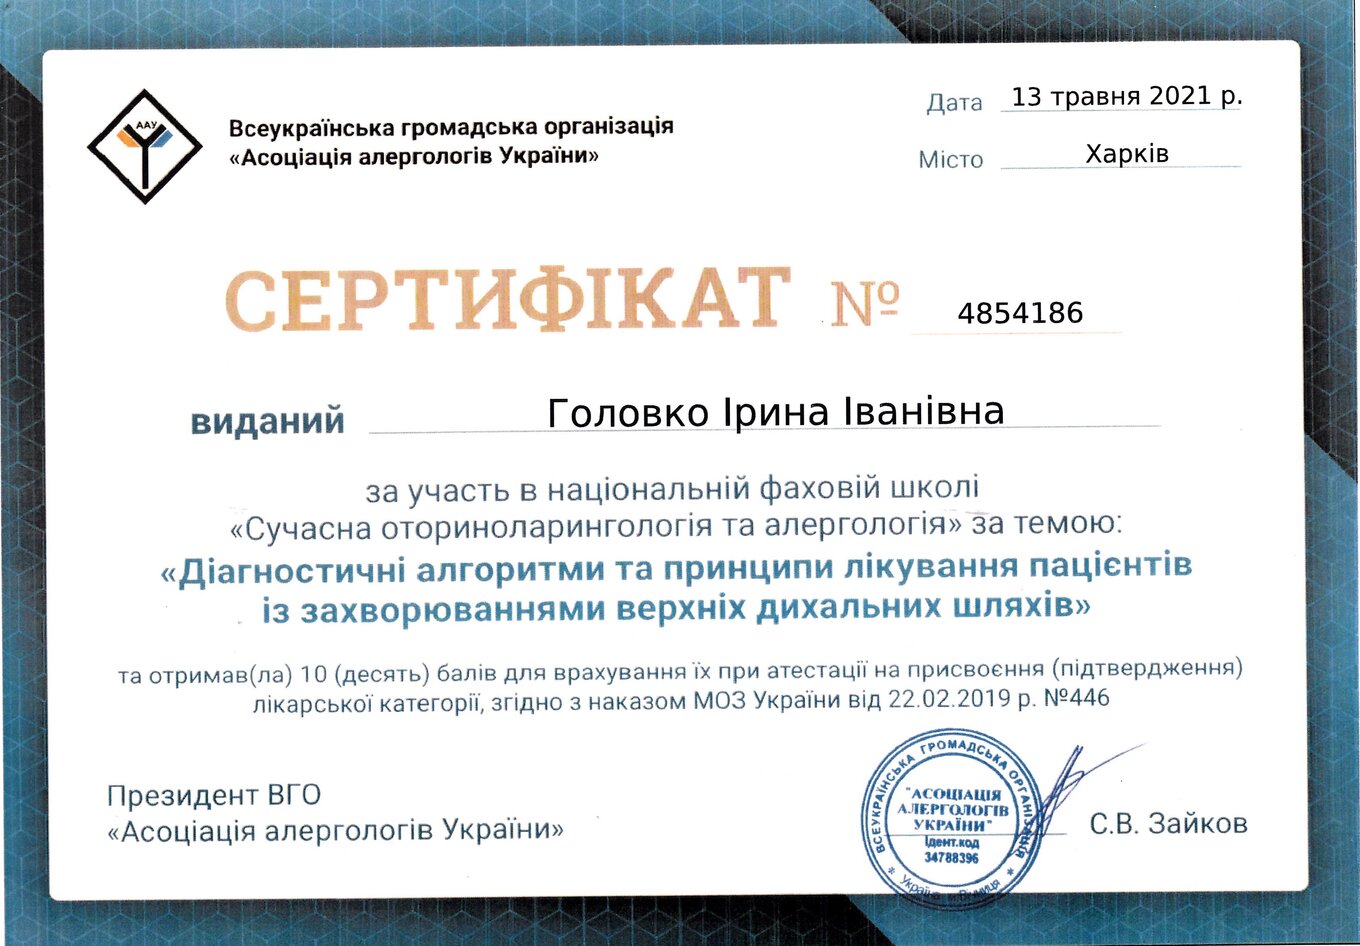 Golovko Irina Ivanivna sertifikat18